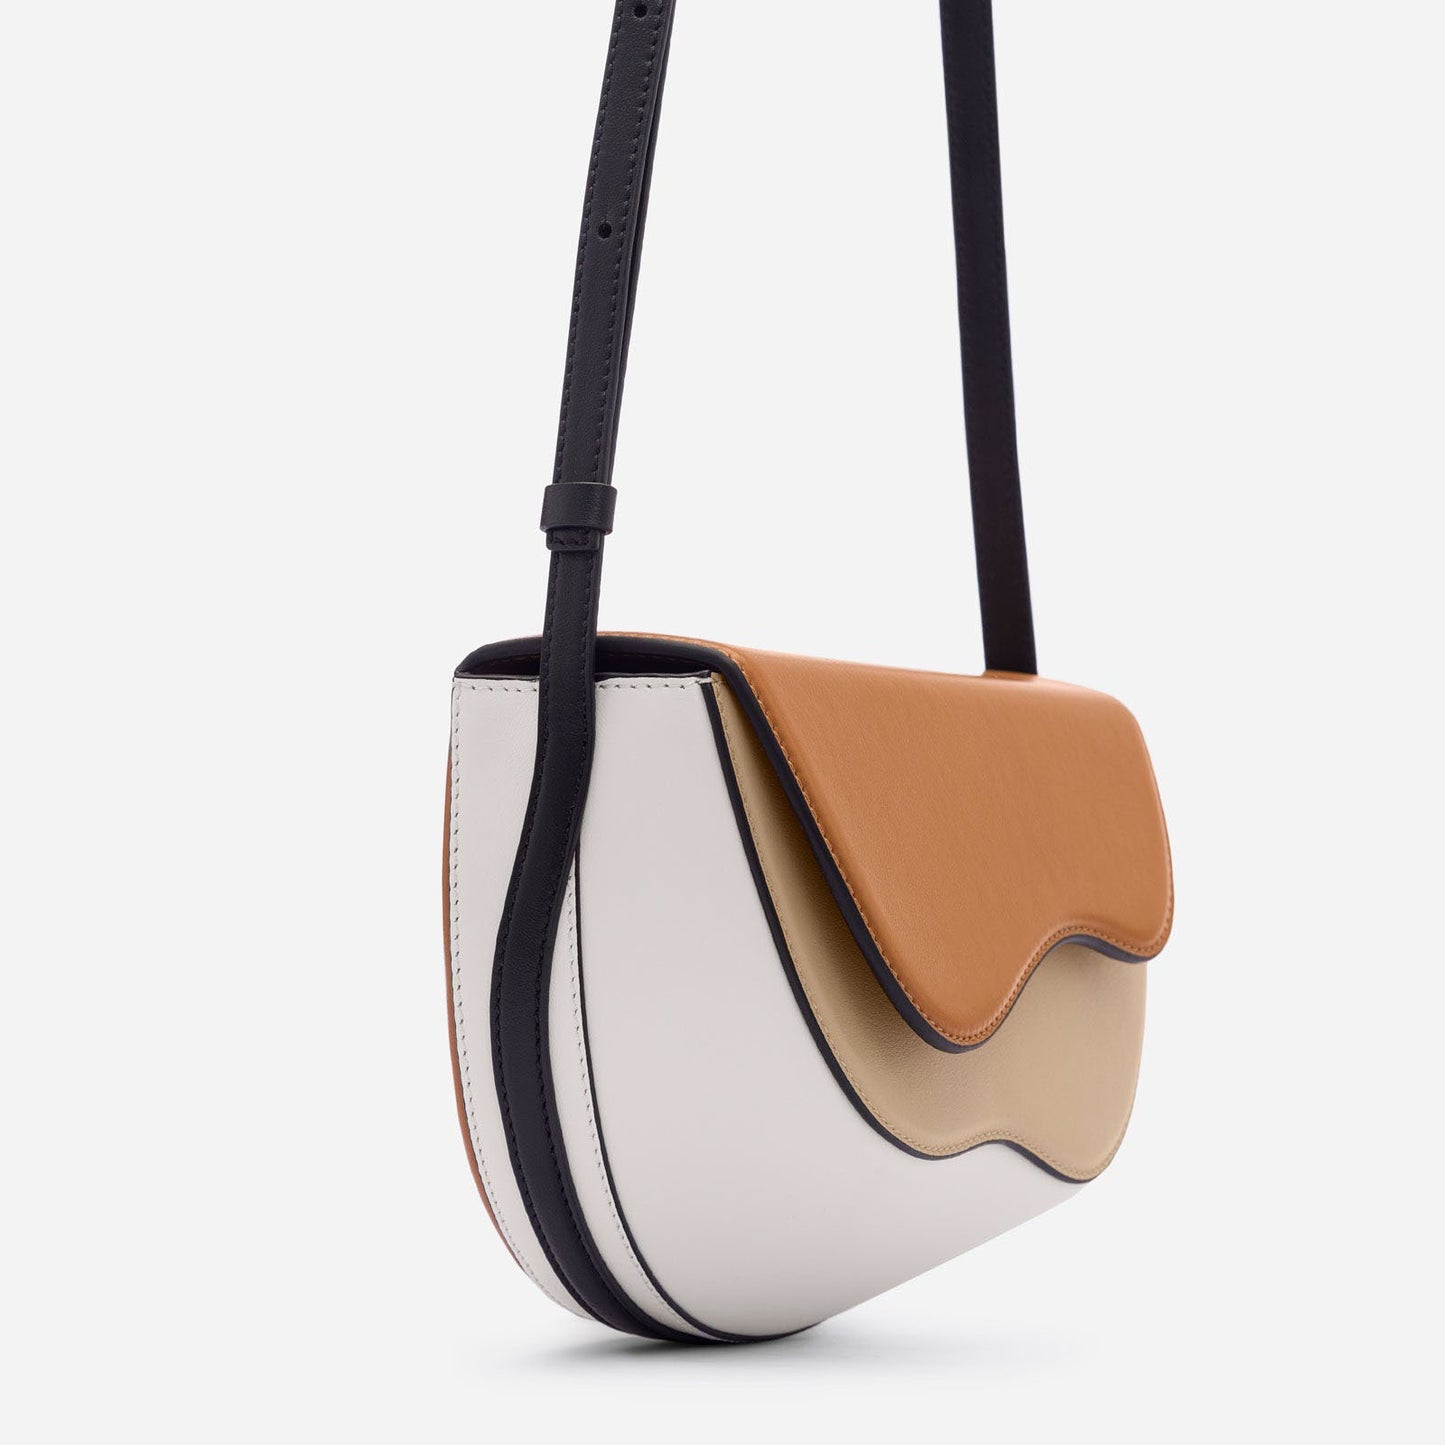 Spliced Single Shoulder Underarm Bag Contrast Bag Saddle Bag Crossbody Bag